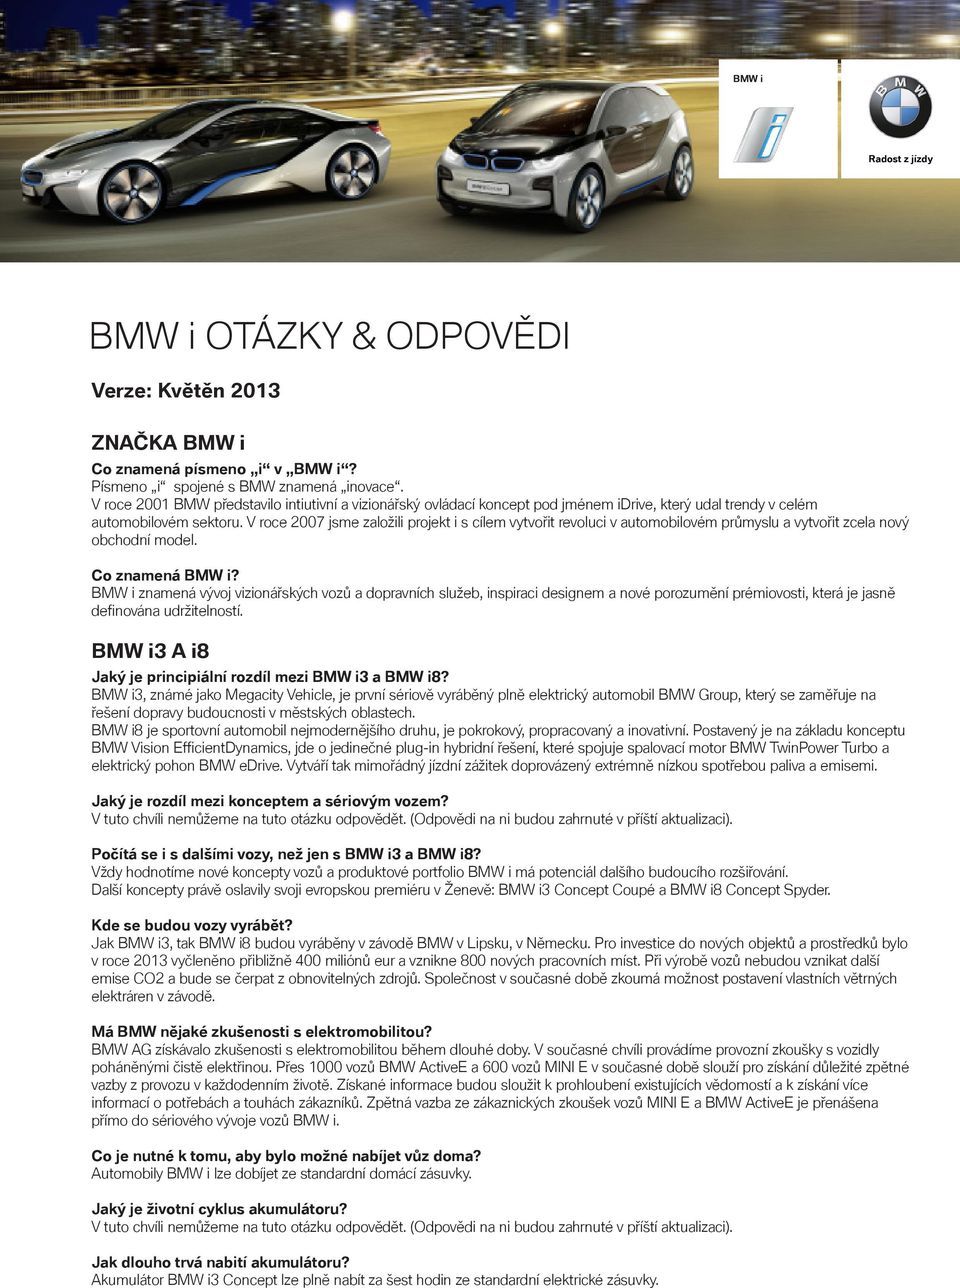 V roce 2007 jsme založili projekt i s cílem vytvořit revoluci v automobilovém průmyslu a vytvořit zcela nový obchodní model. Co znamená BMW i?